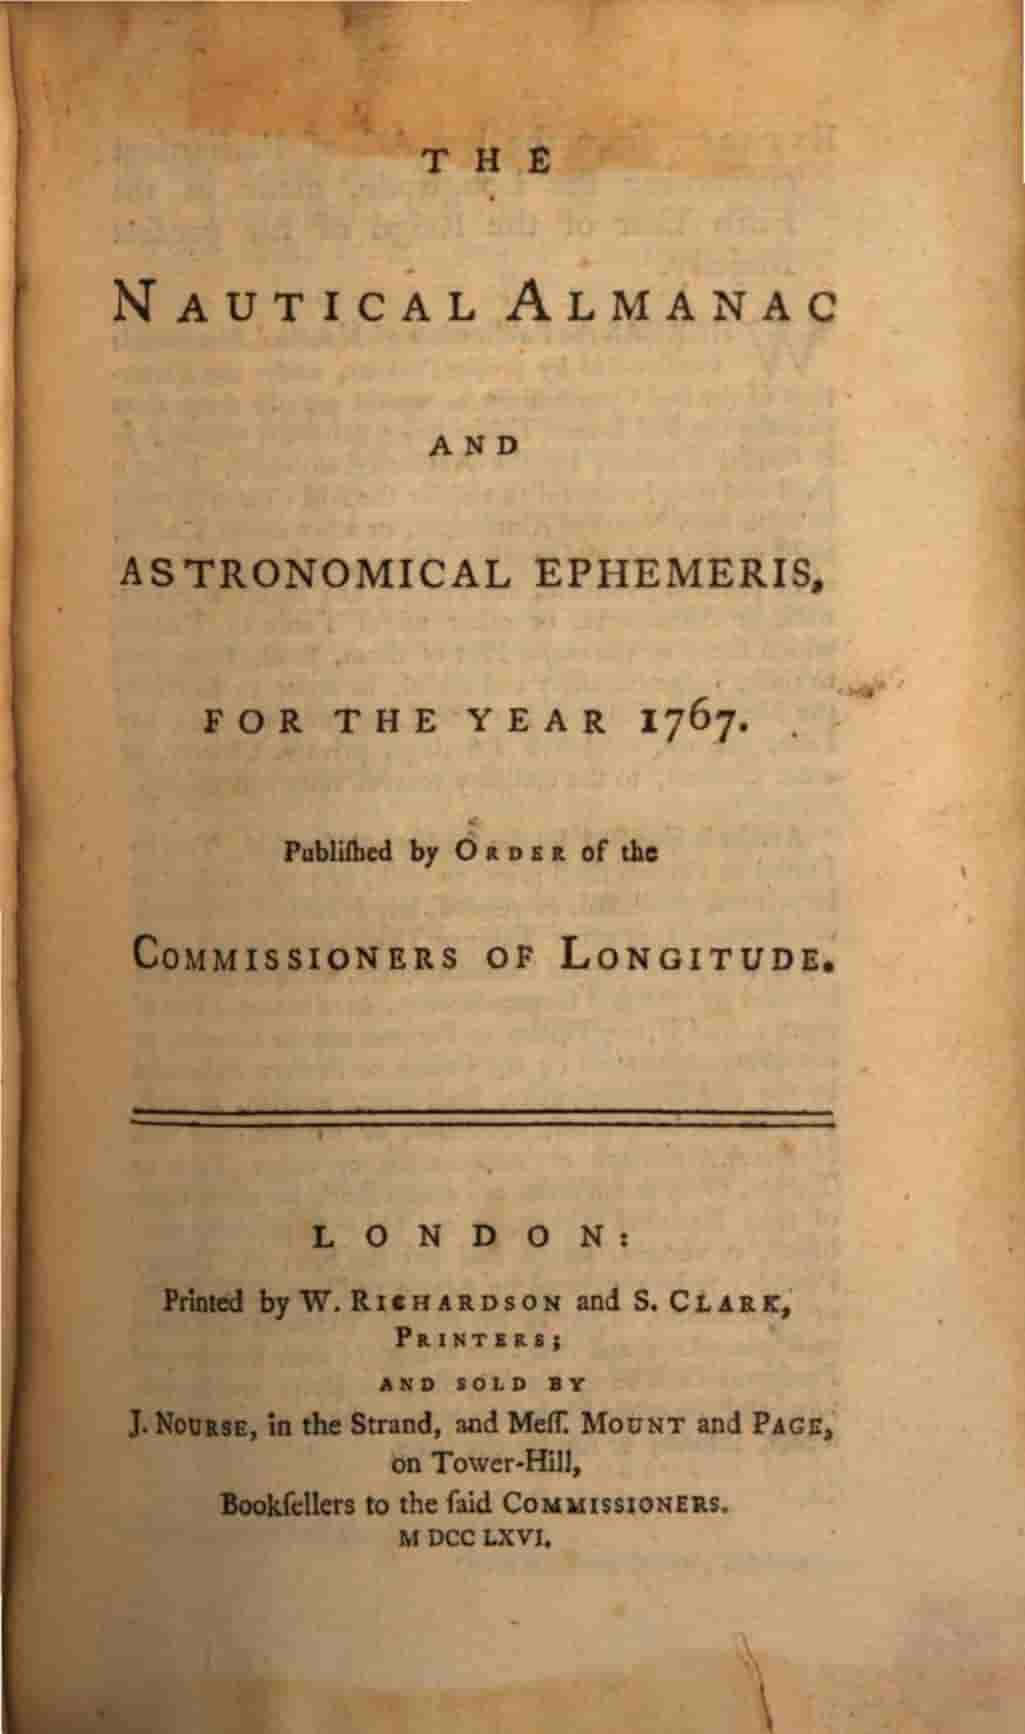 Recebimento do "Almanaque Náutico" de Greenwich pela Biblioteca do Observatório Nacional